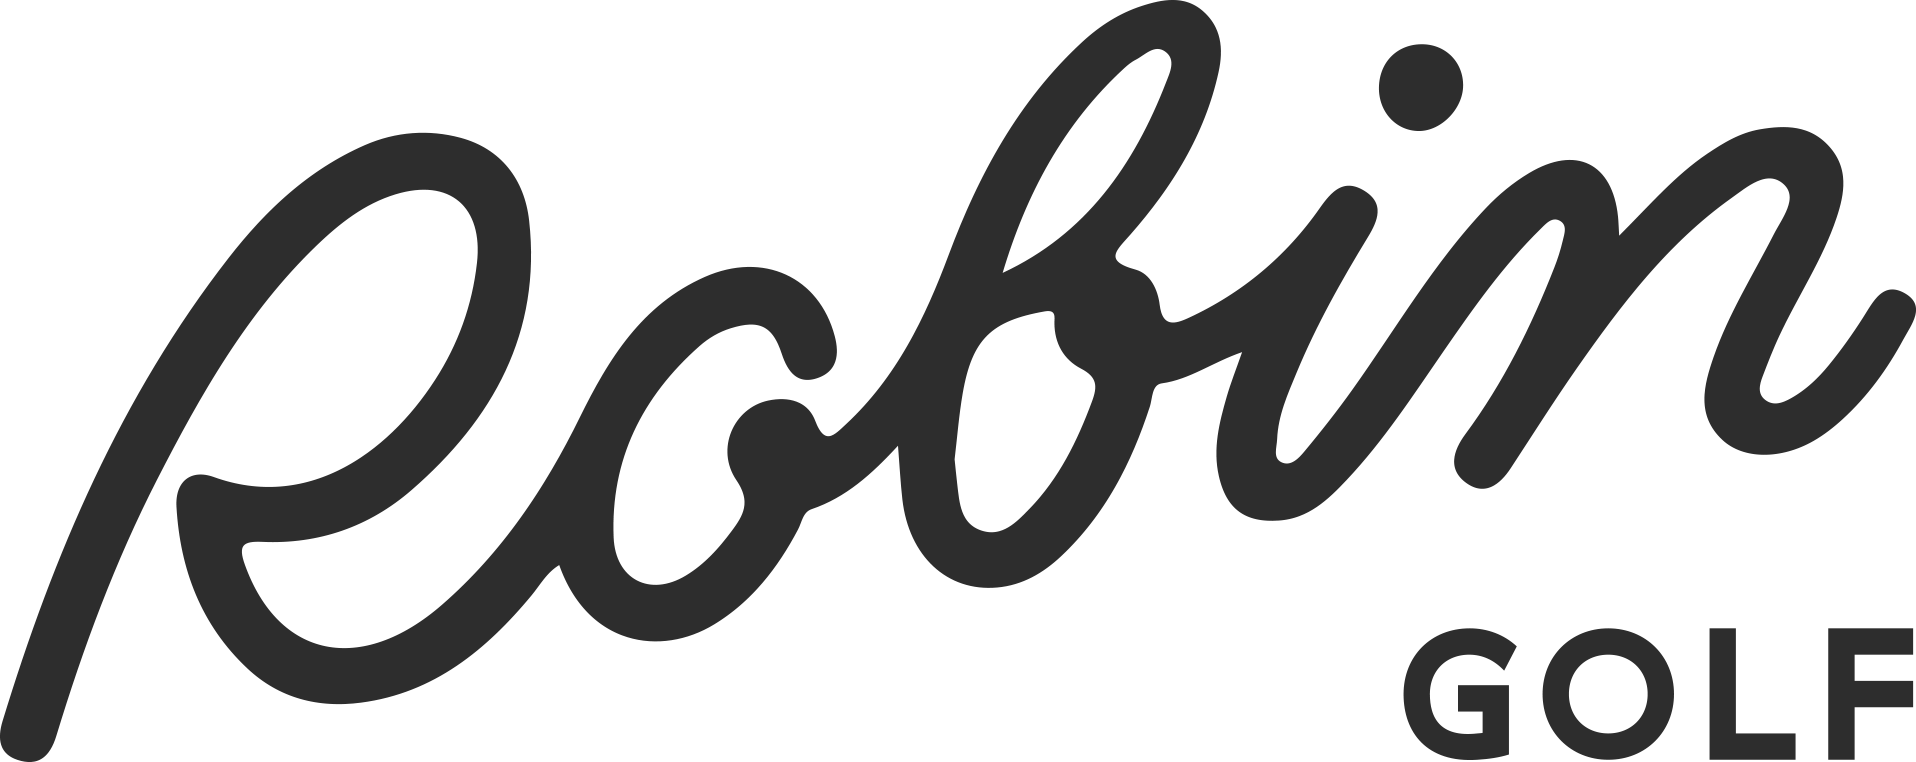 Robin Golf Logo